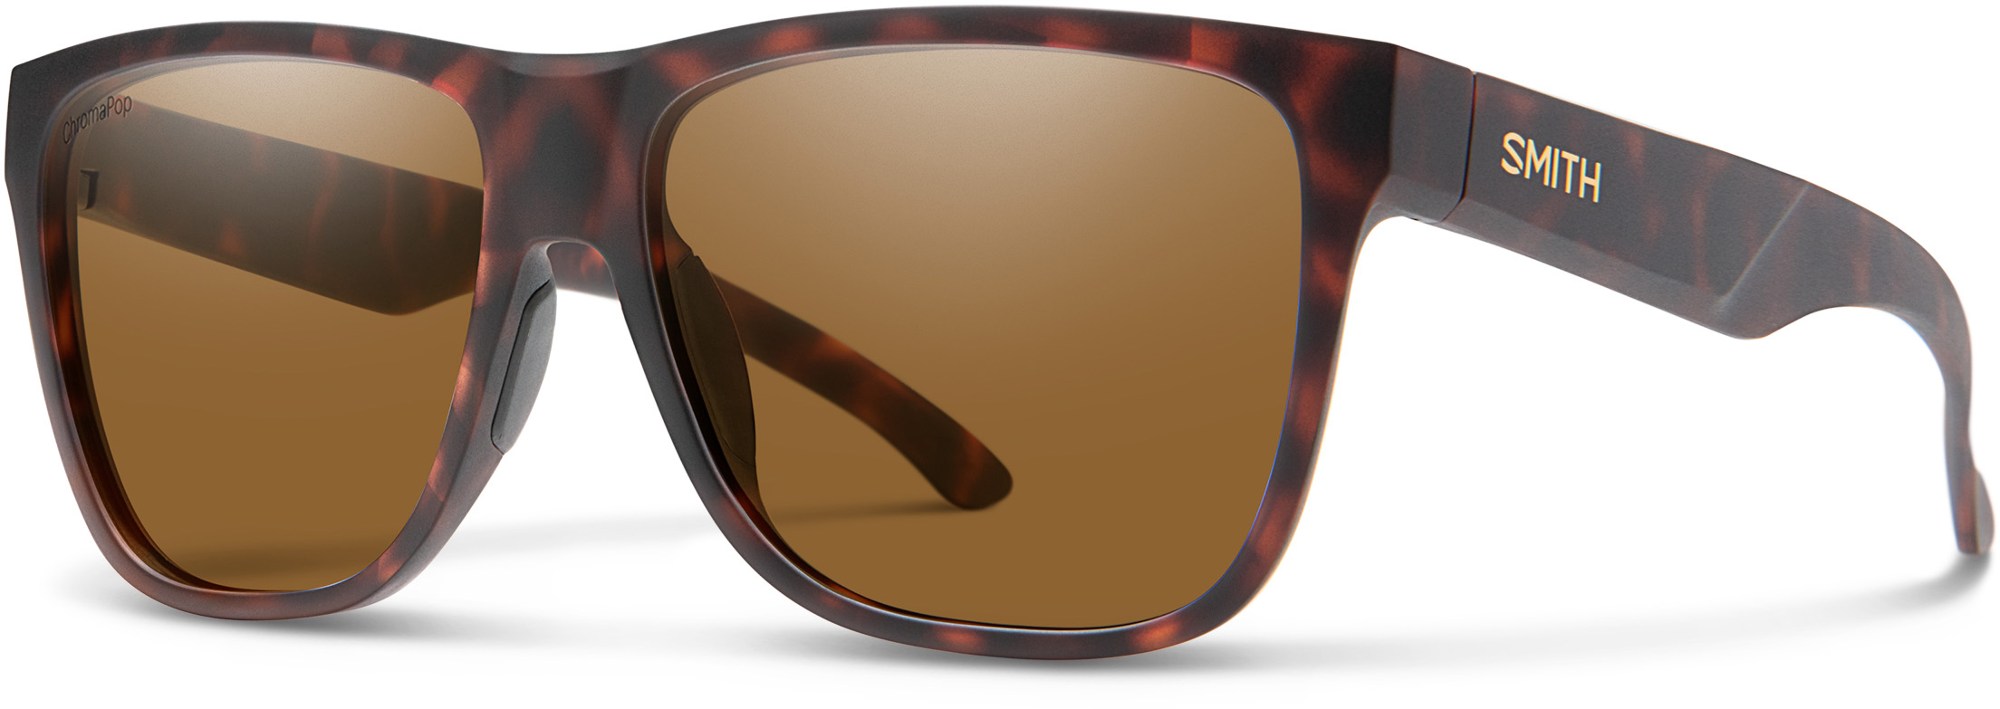 Поляризованные солнцезащитные очки Lowdown XL 2 ChromaPop Smith, коричневый smith